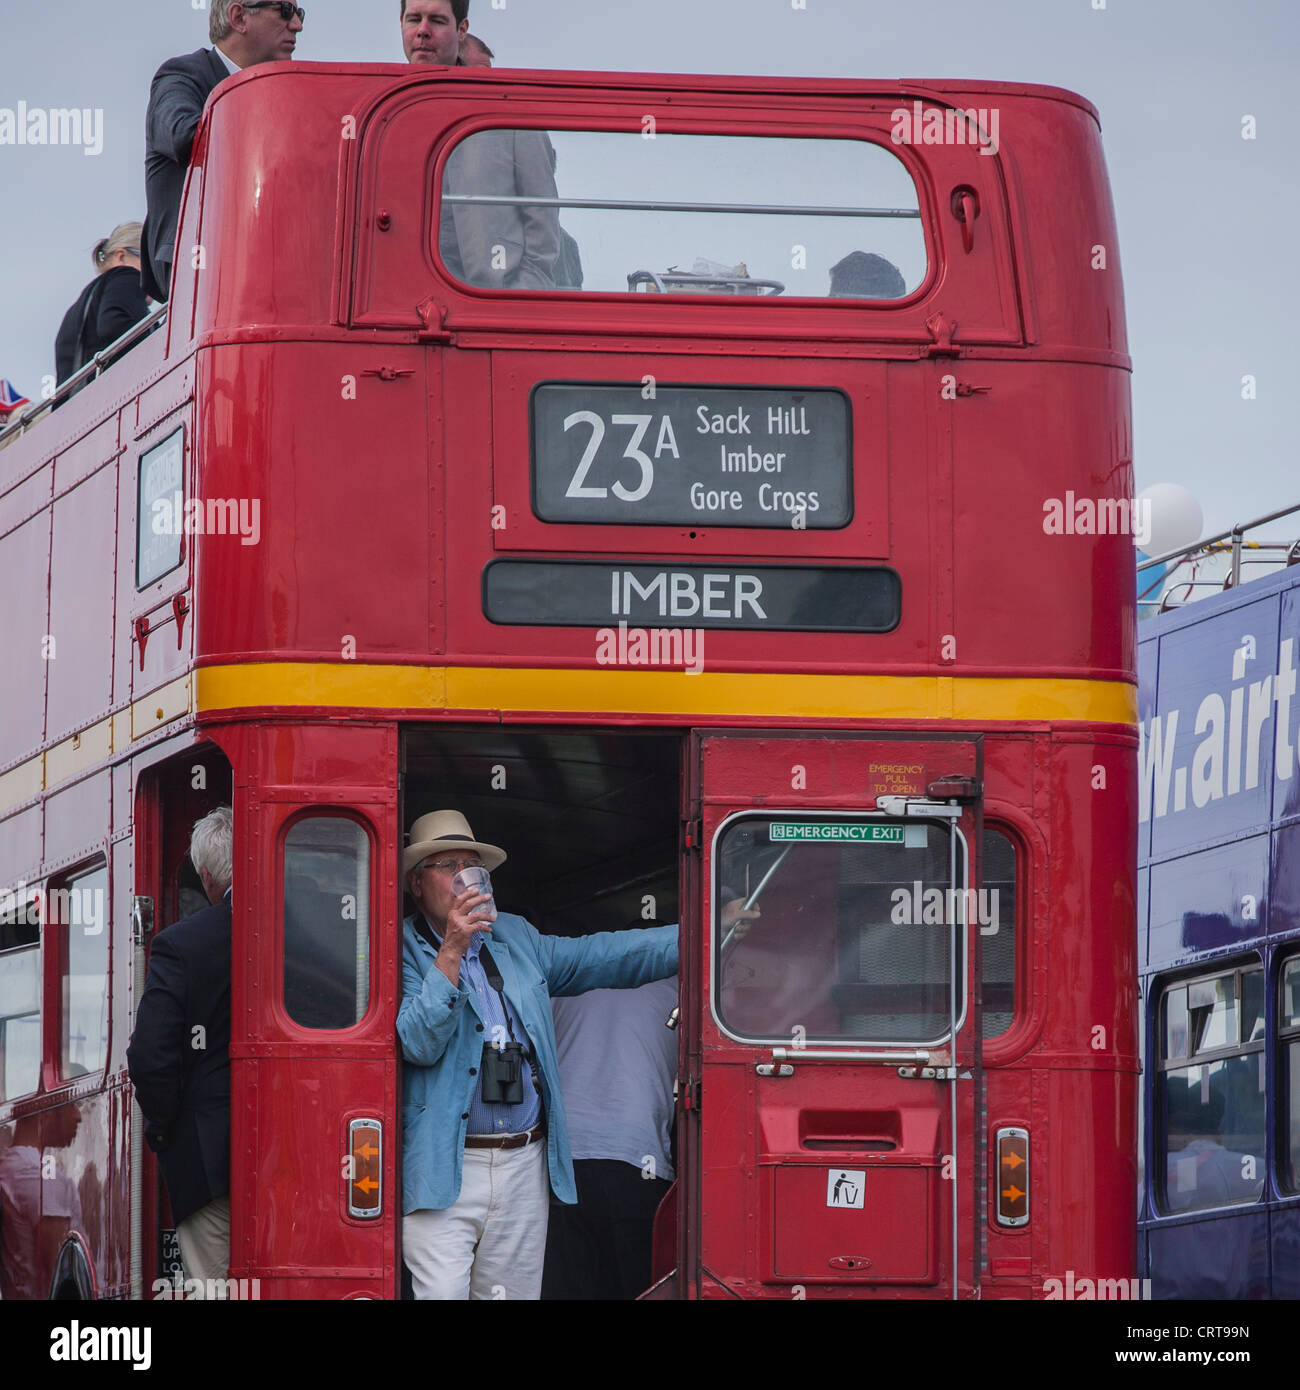 Derby d'Epsom festivaliers célébrer sur un bus de Londres Banque D'Images